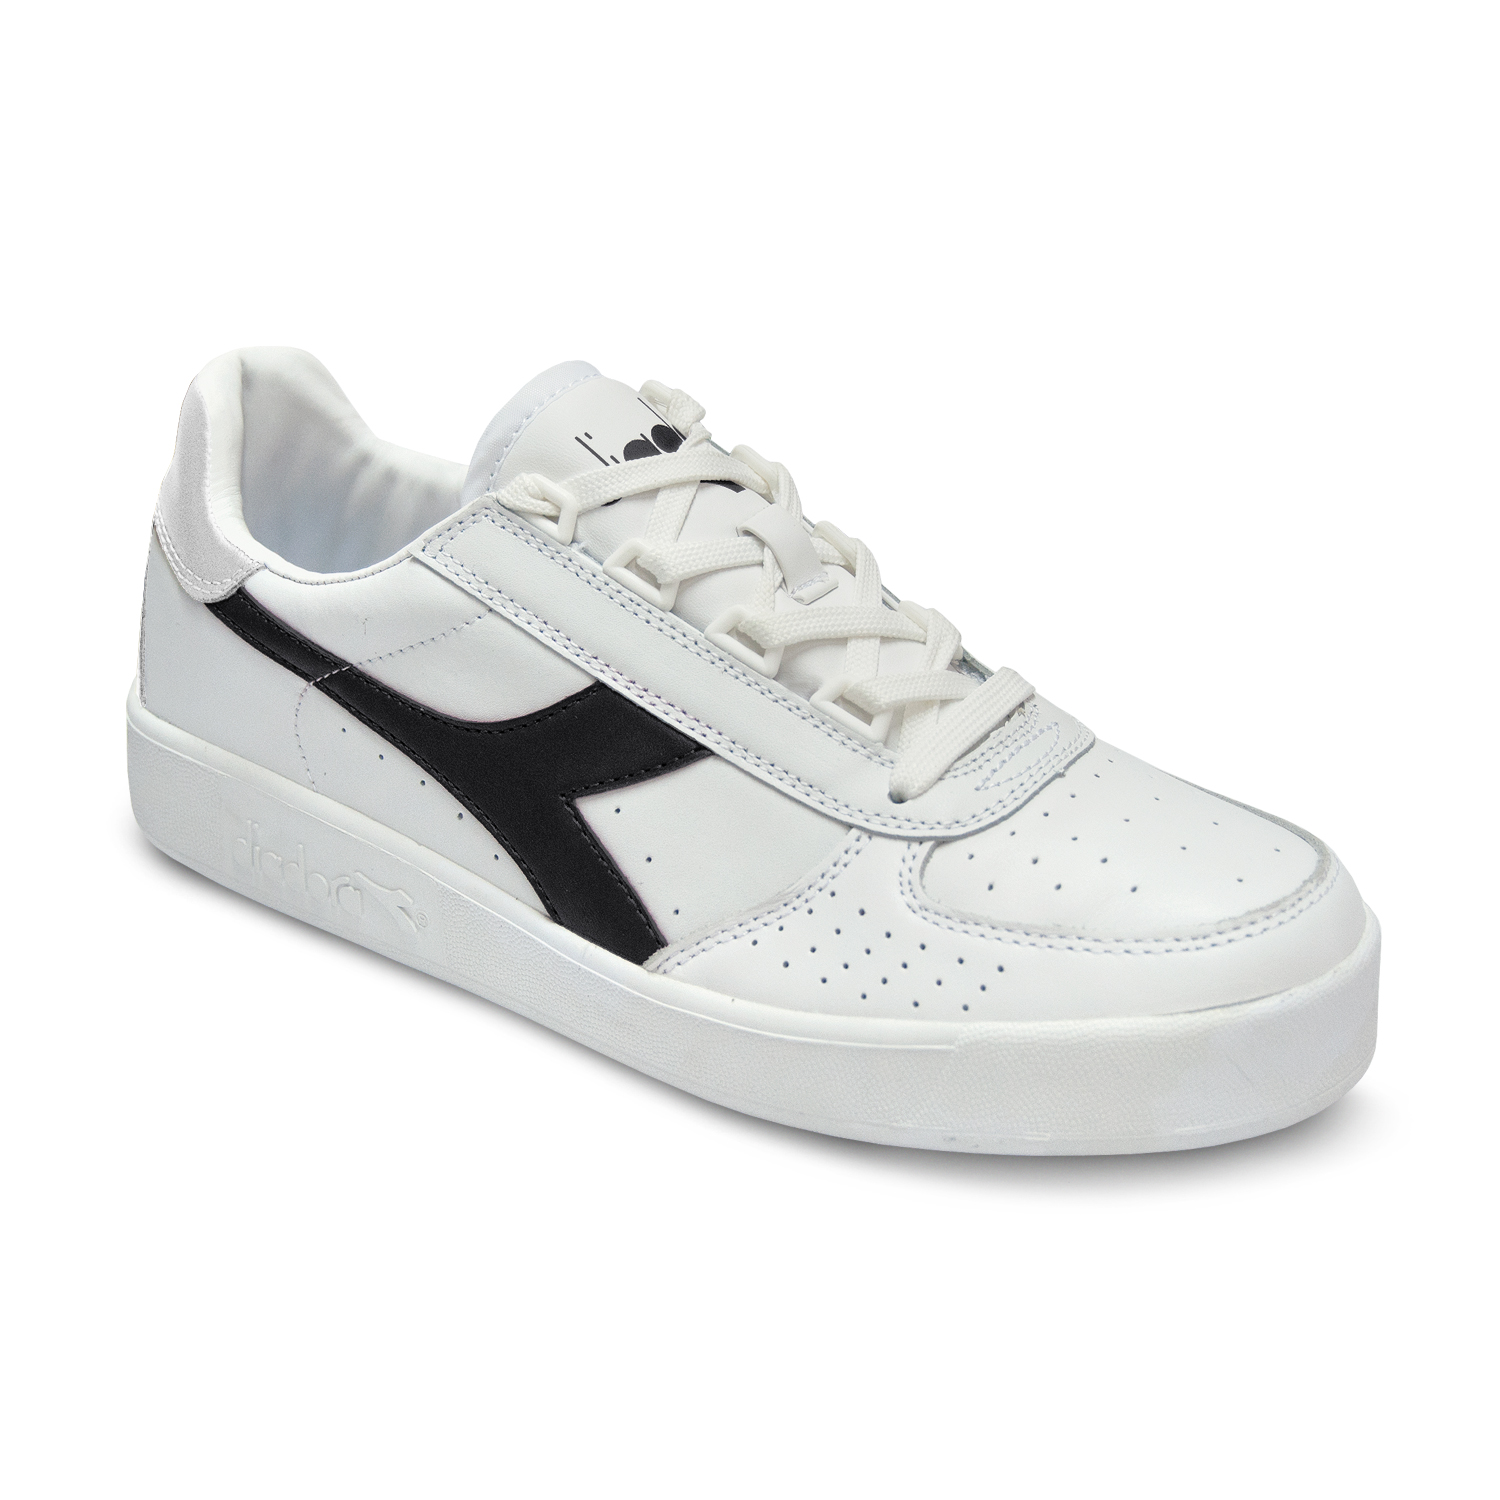 Scarpe Sneakers Uomo DIADORA Modello B.Elite White White Black | eBay